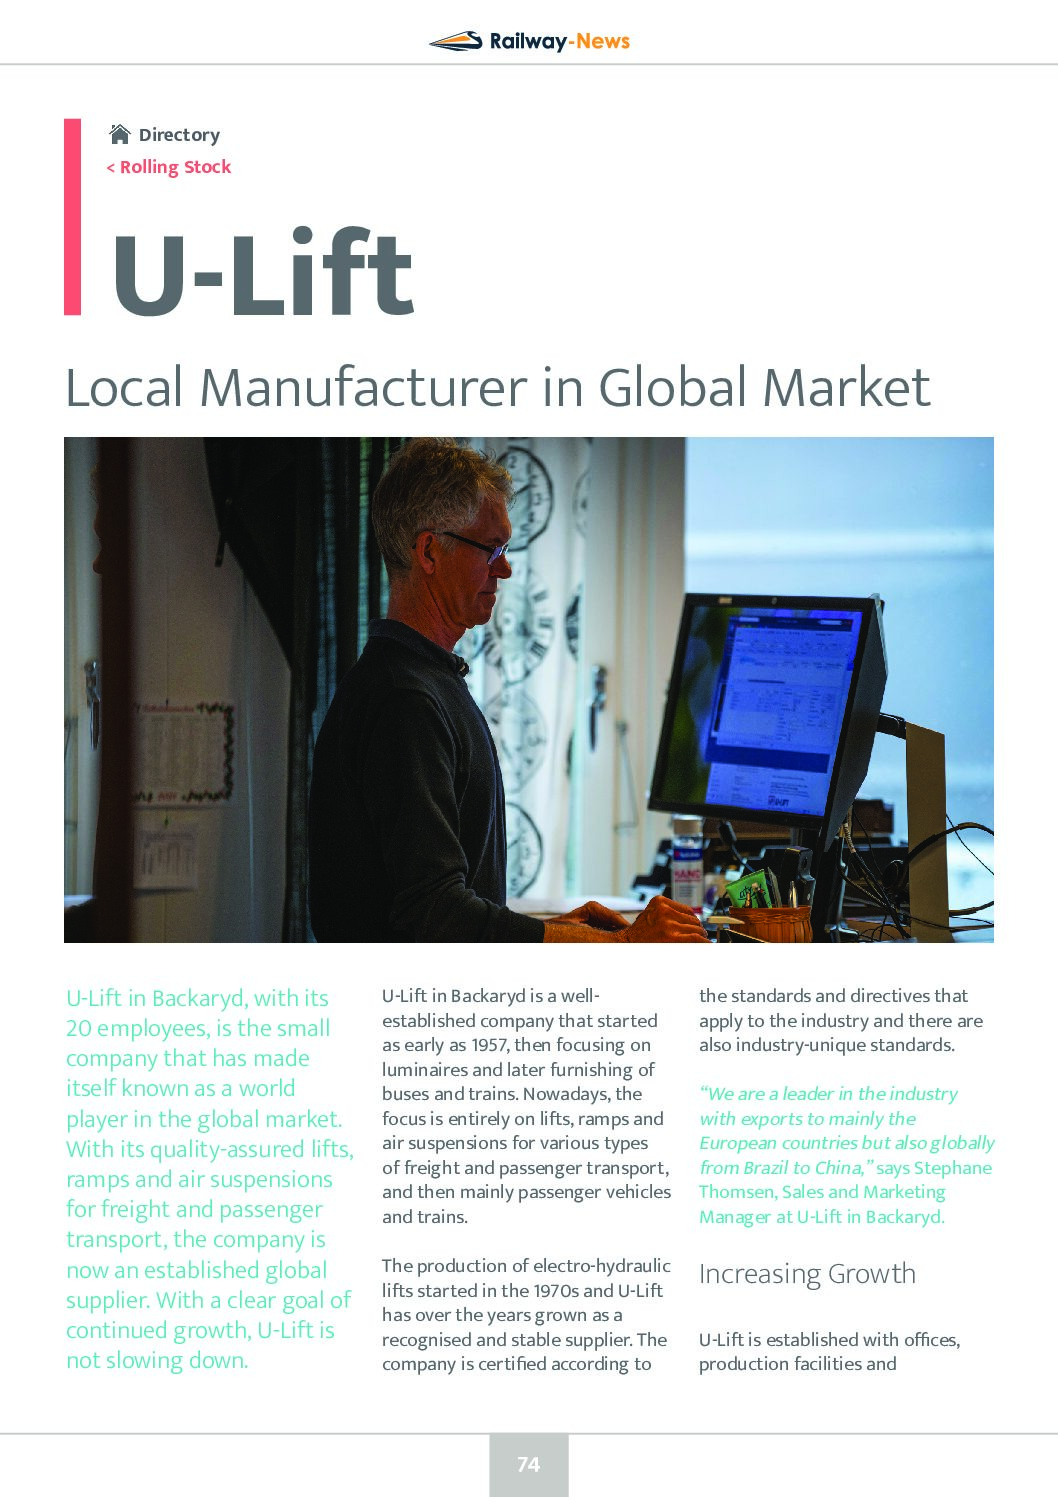 U-Lift: Local Manufacturer in Global Market